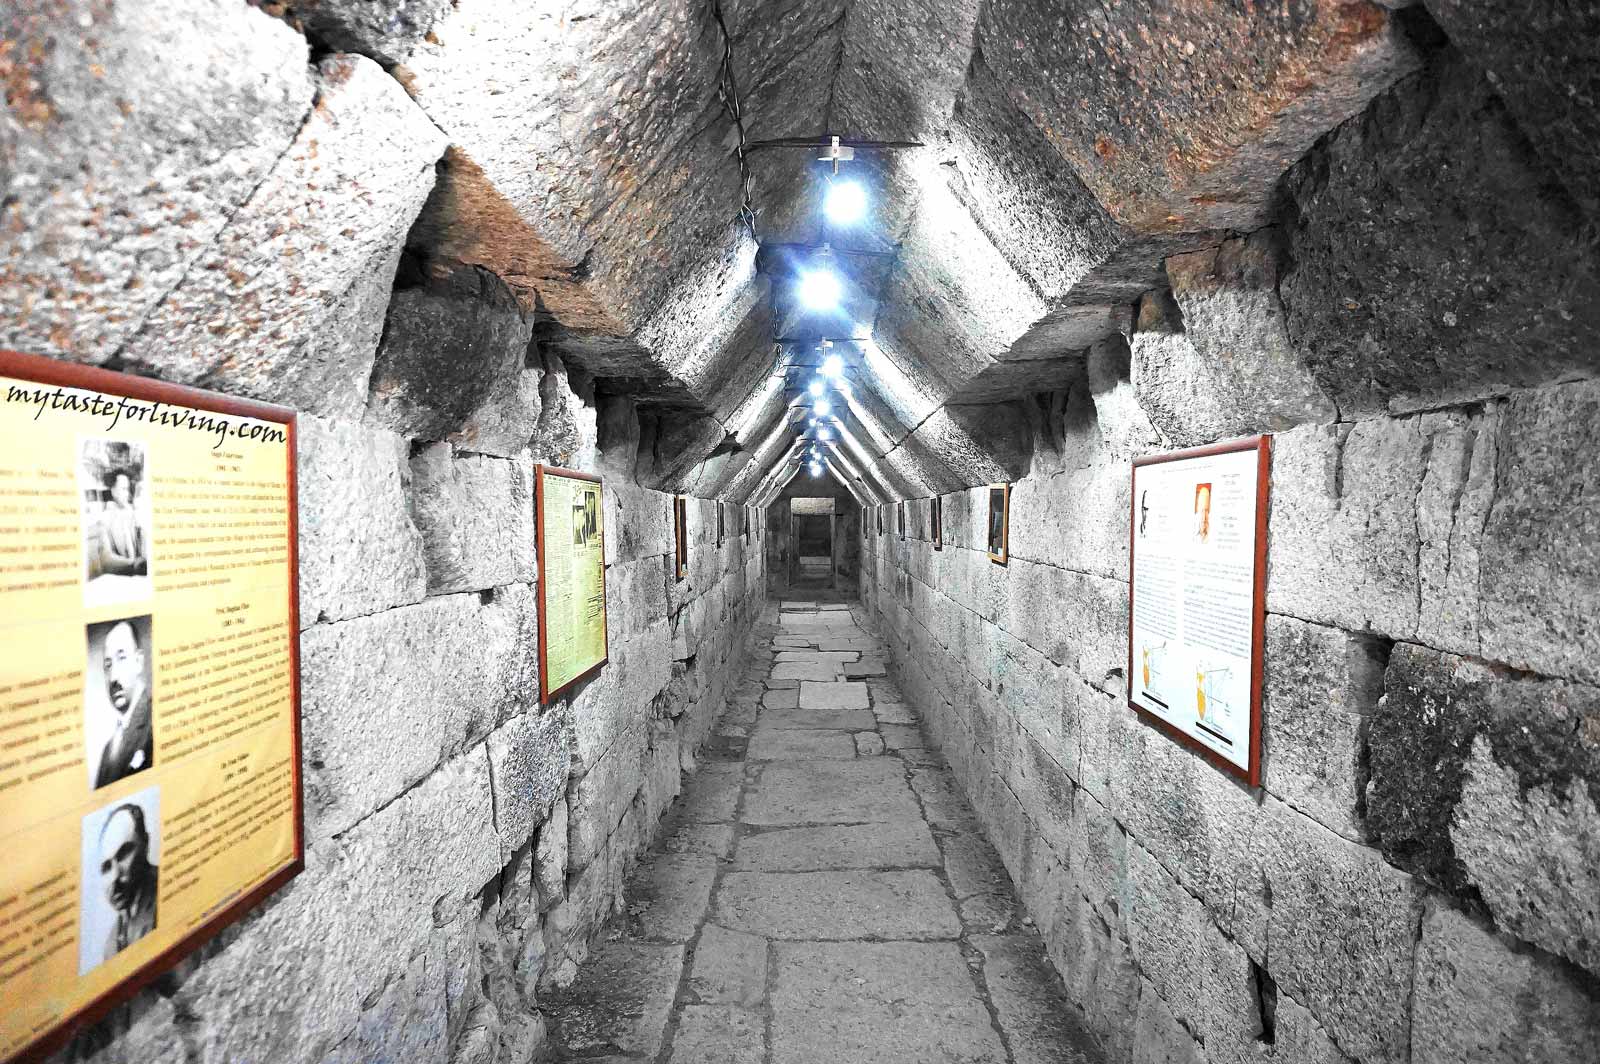 Тракийската куполна гробница Мезек или наречената още Мезешка гробница се намира в покрайнините на село Мезек, до Свиленград. Тя е една от най-големите и внушителни тракийски куполни гробници в България. Запазена е изцяло в оригиналния си вид и общата й дължина е около 30 метра. През 1968 година е обявена за „паметник от национално значение”. 